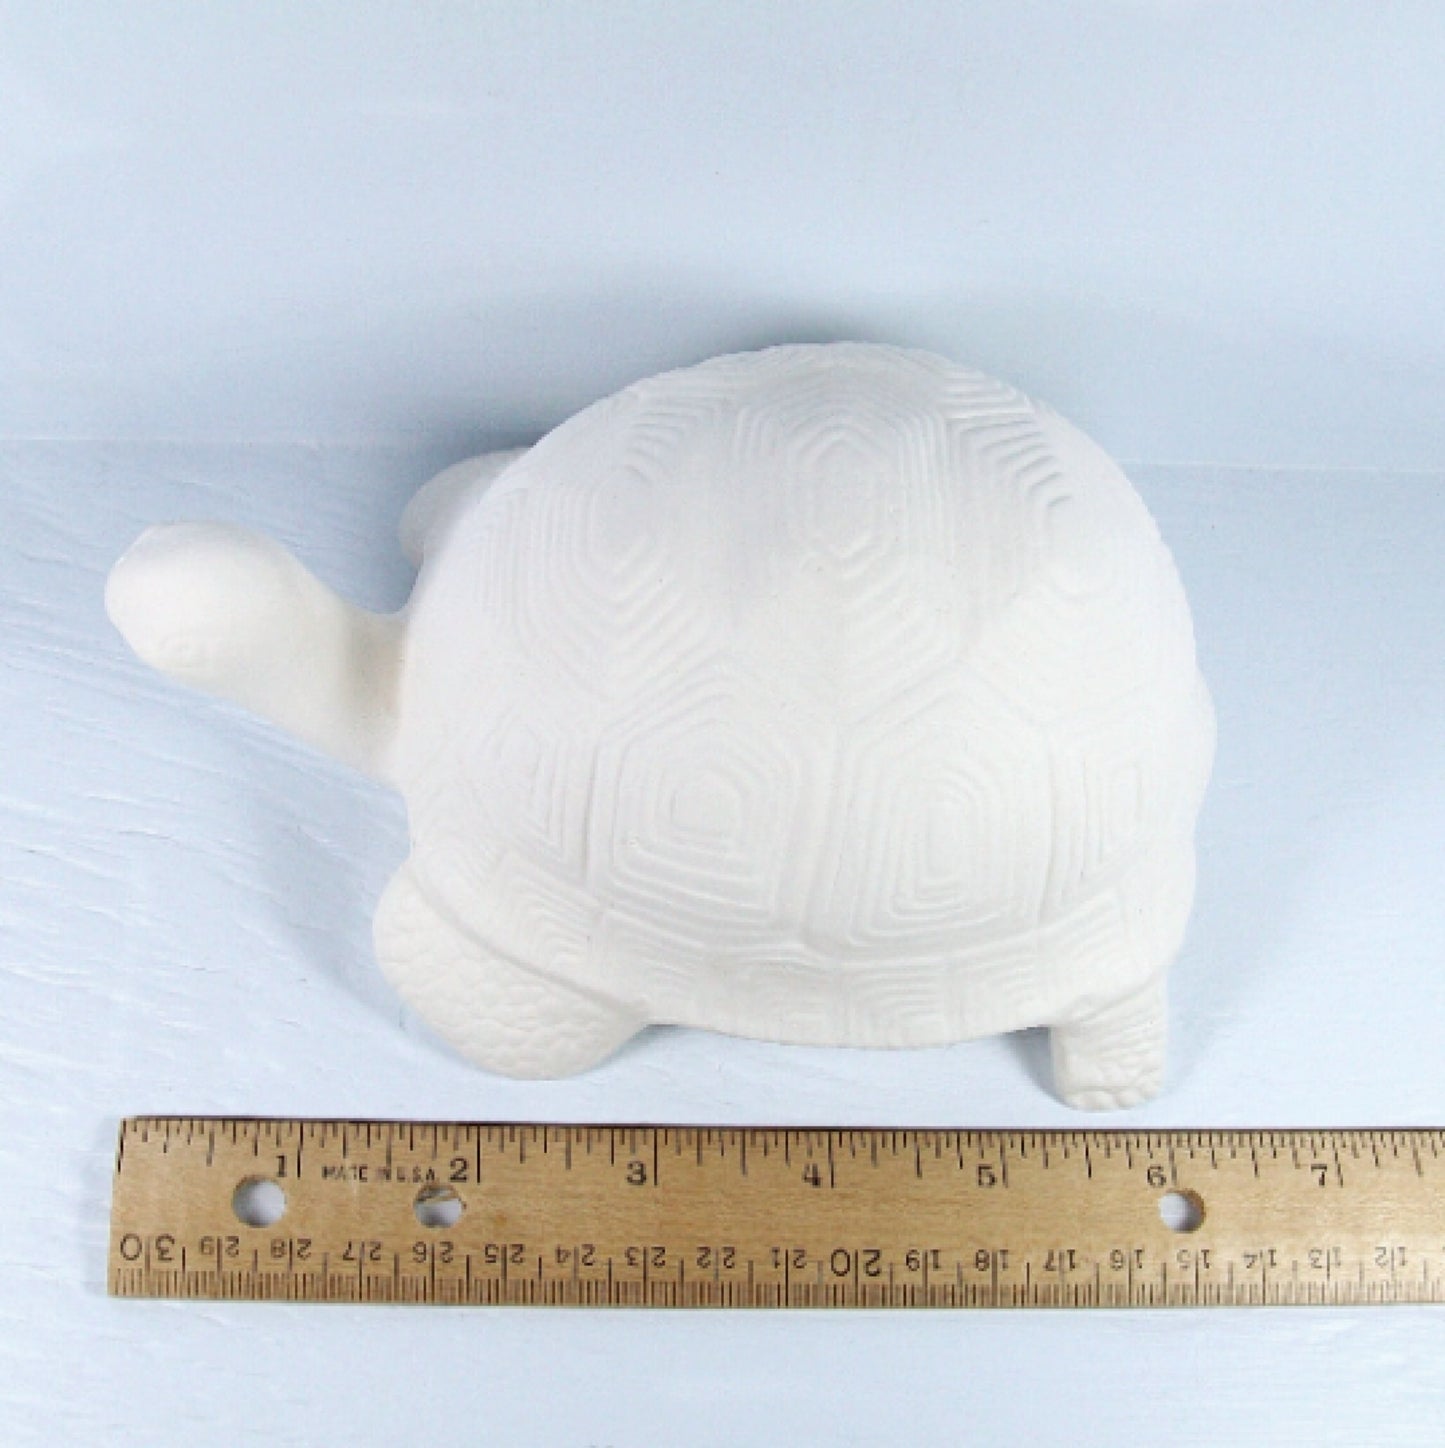 Unpainted Ceramic Turtle / Handmade Ceramic Bisque / Turtle Statue / Ceramic Turtle Figurine / Ceramics To Paint / Paintable Ceramics